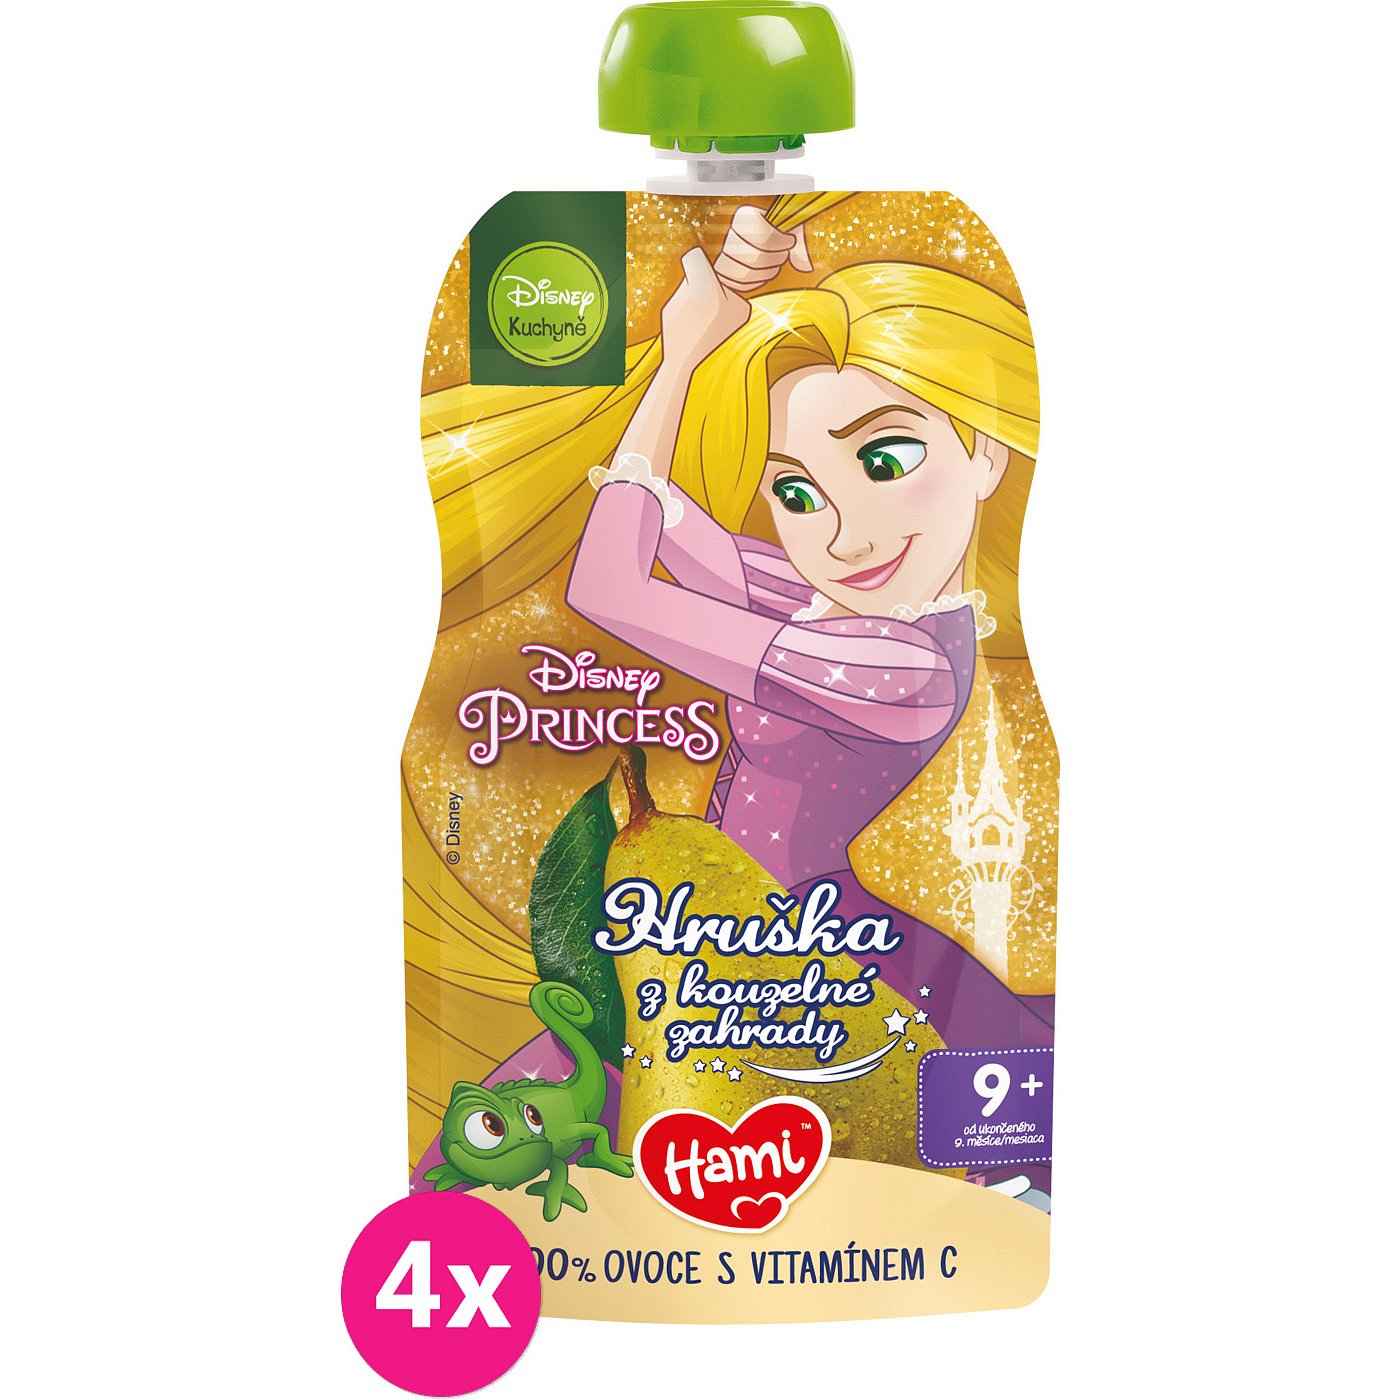 4x HAMI Disney Princess ovocná kapsička Hruška z kouzelné zahrady 110 g, 9+